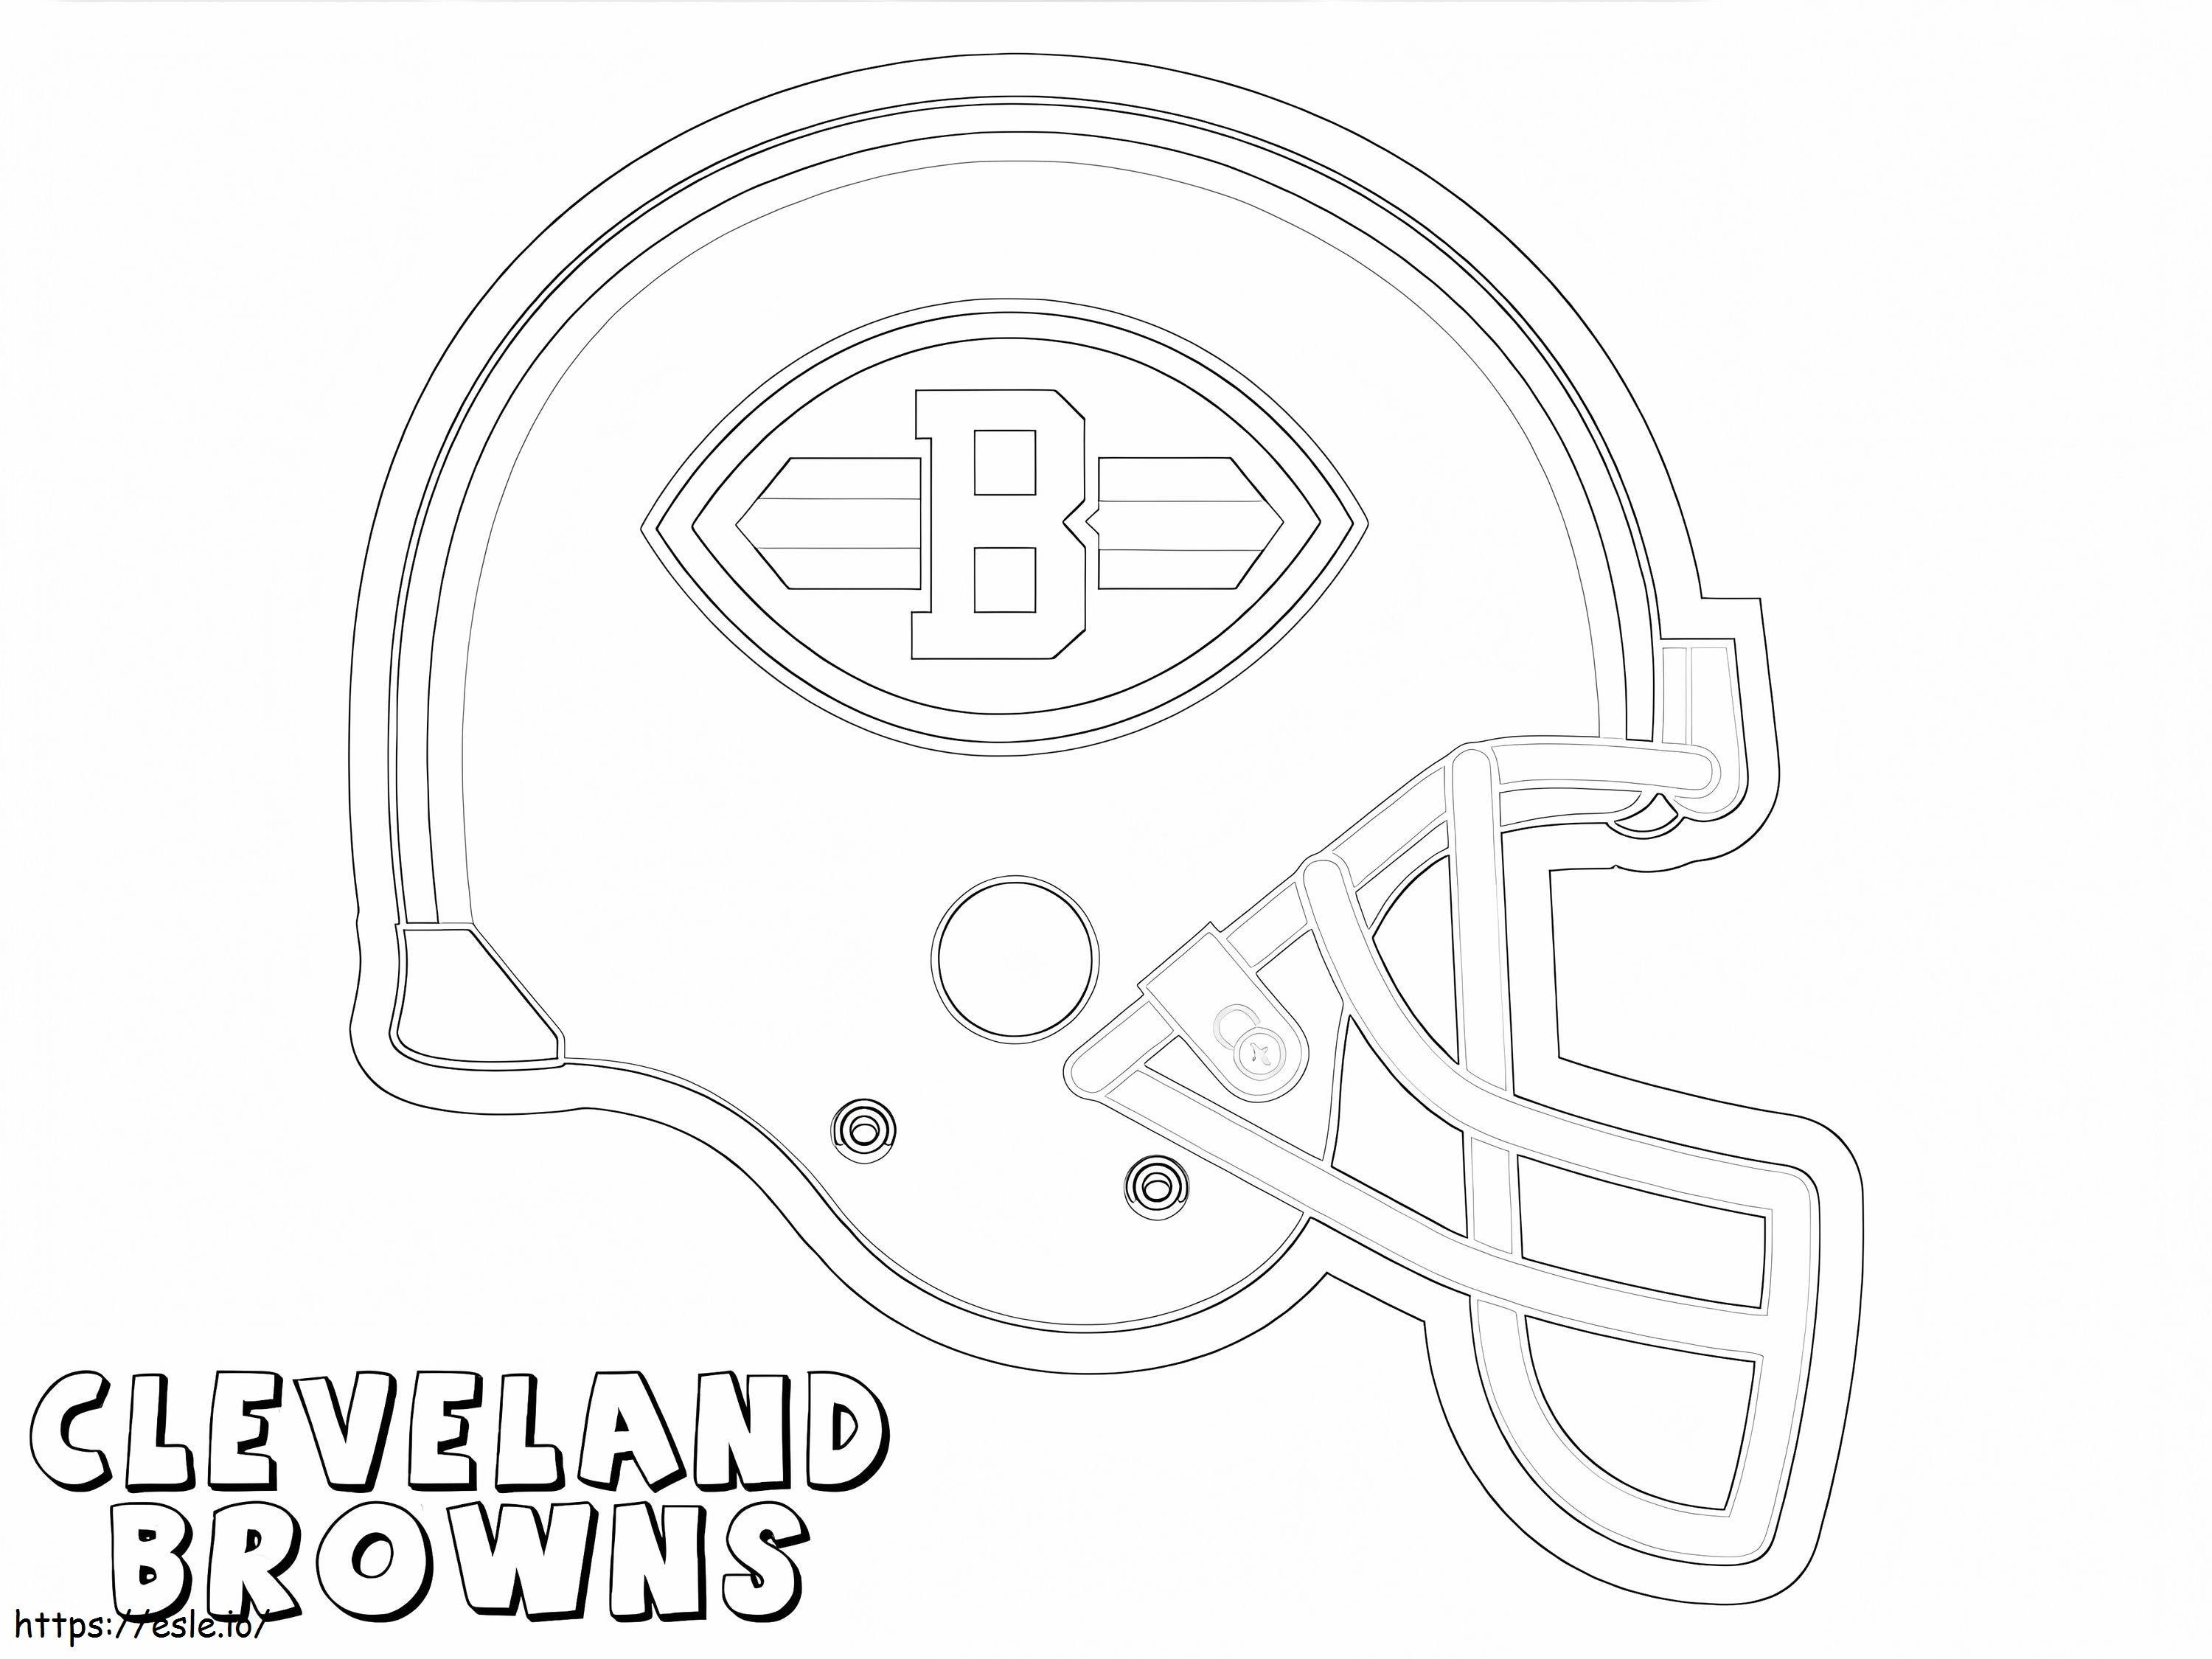 Cleveland Browns 3 ausmalbilder